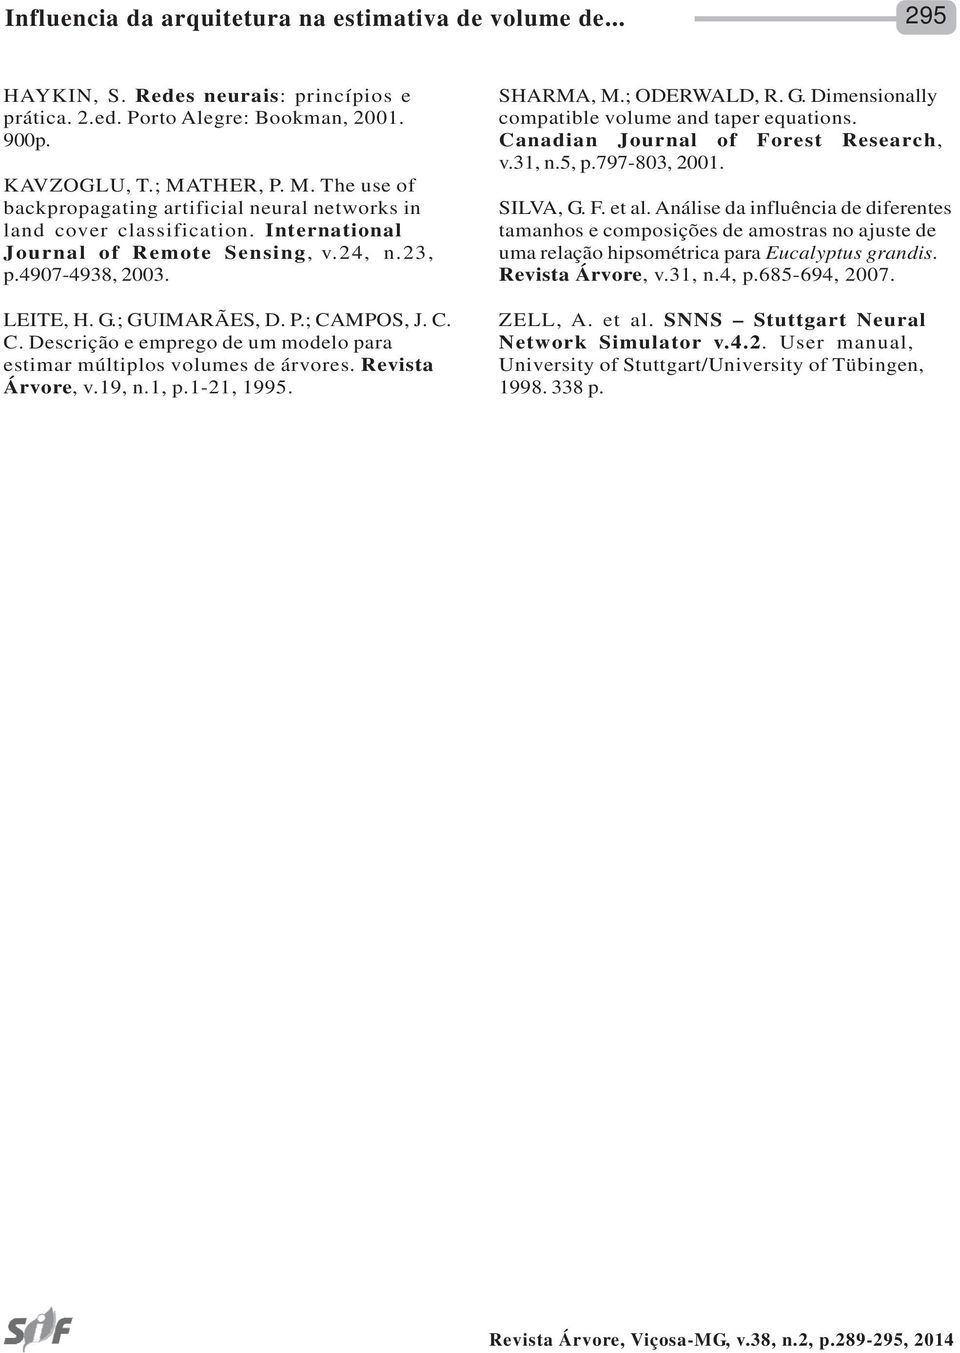 C. C. Descrição e emprego de um modelo para estimar múltiplos volumes de árvores. Revista Árvore, v.19, n.1, p.1-21, 1995. SHARMA, M.; ODERWALD, R. G.